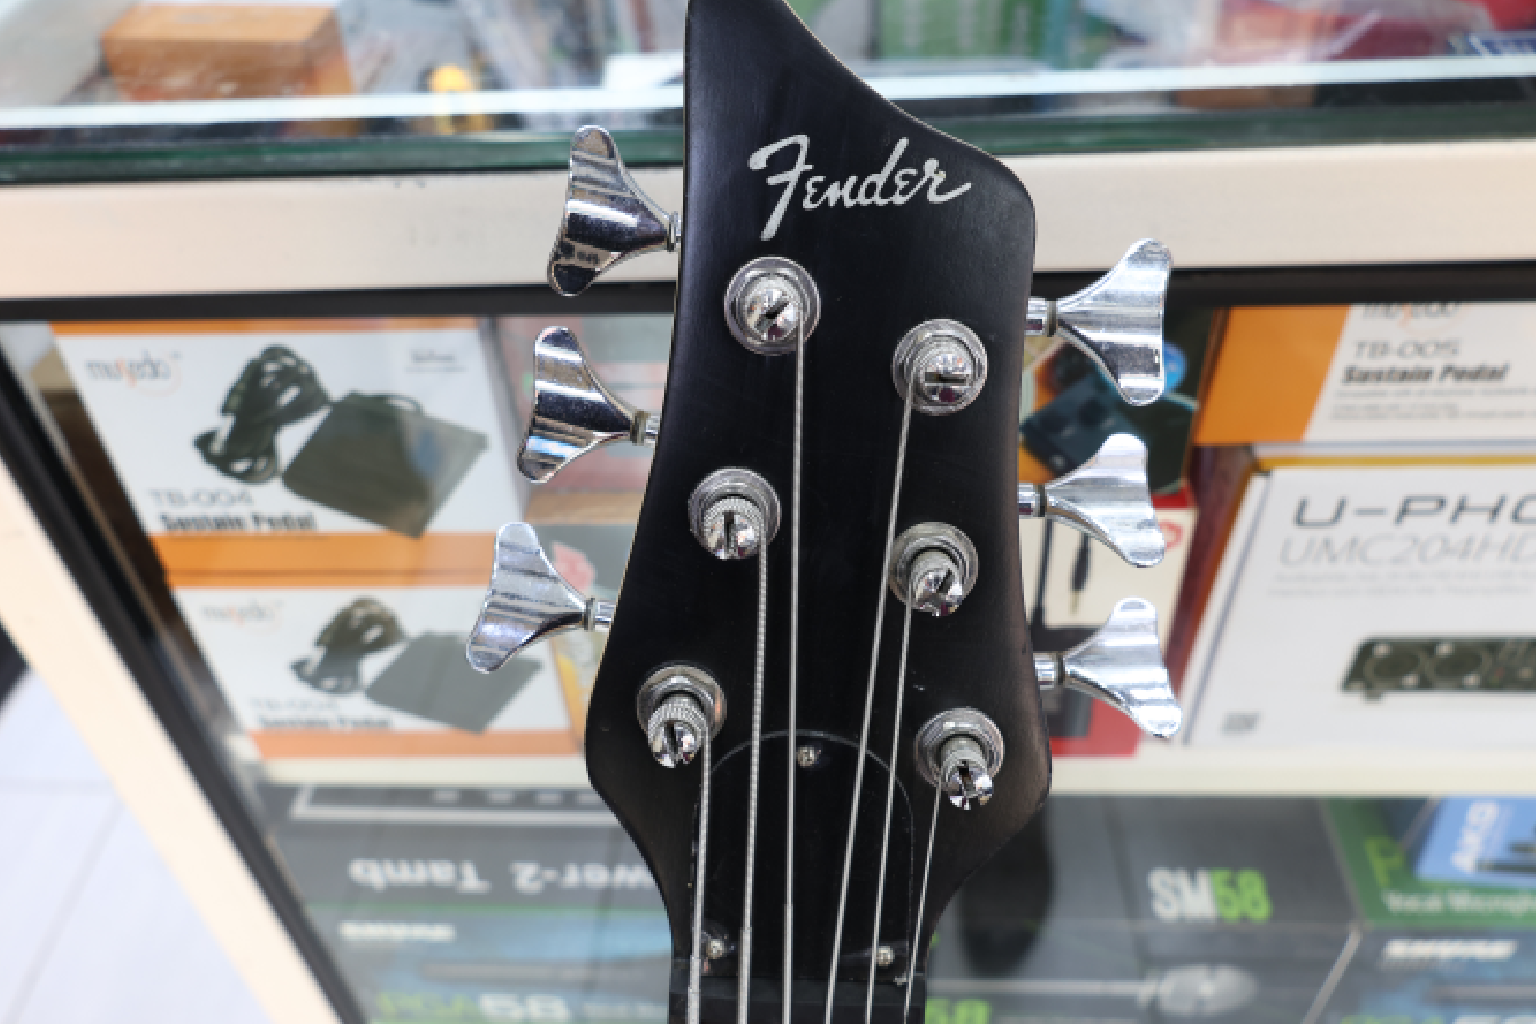 Fender bass review